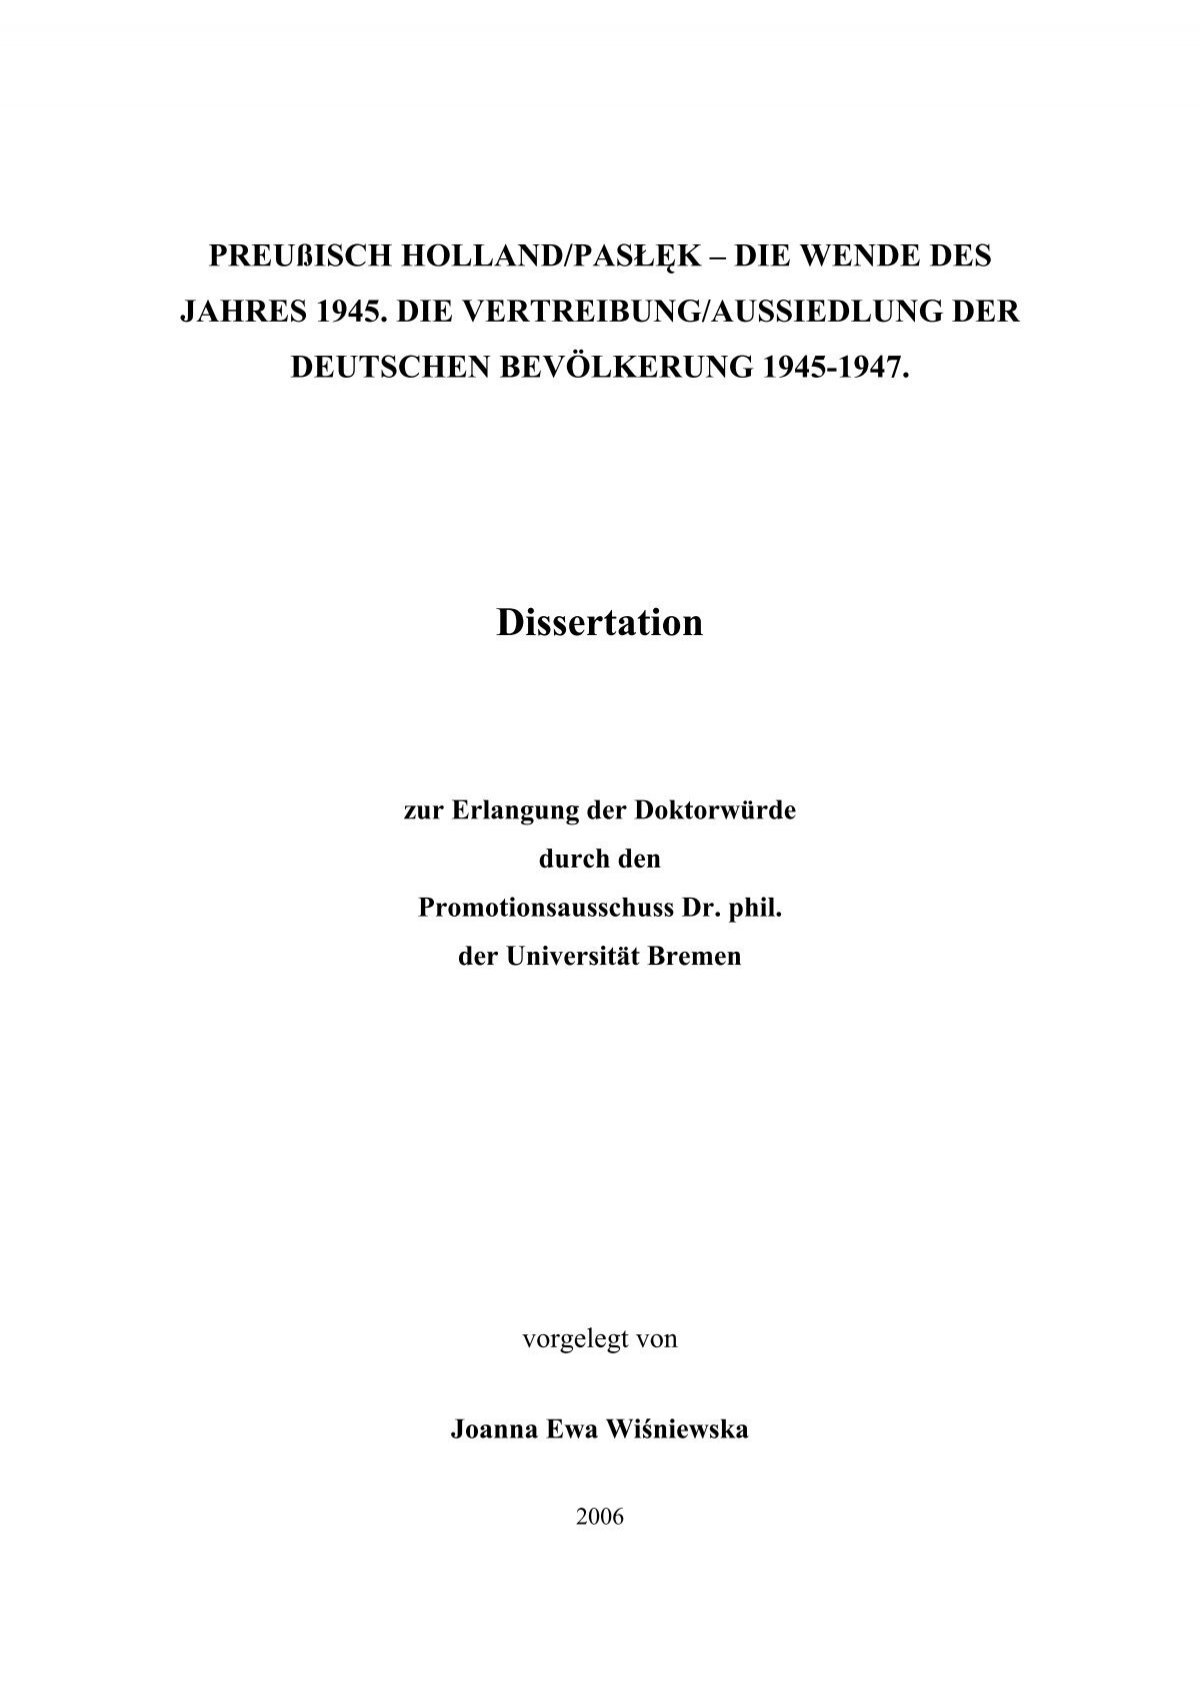 dissertation download